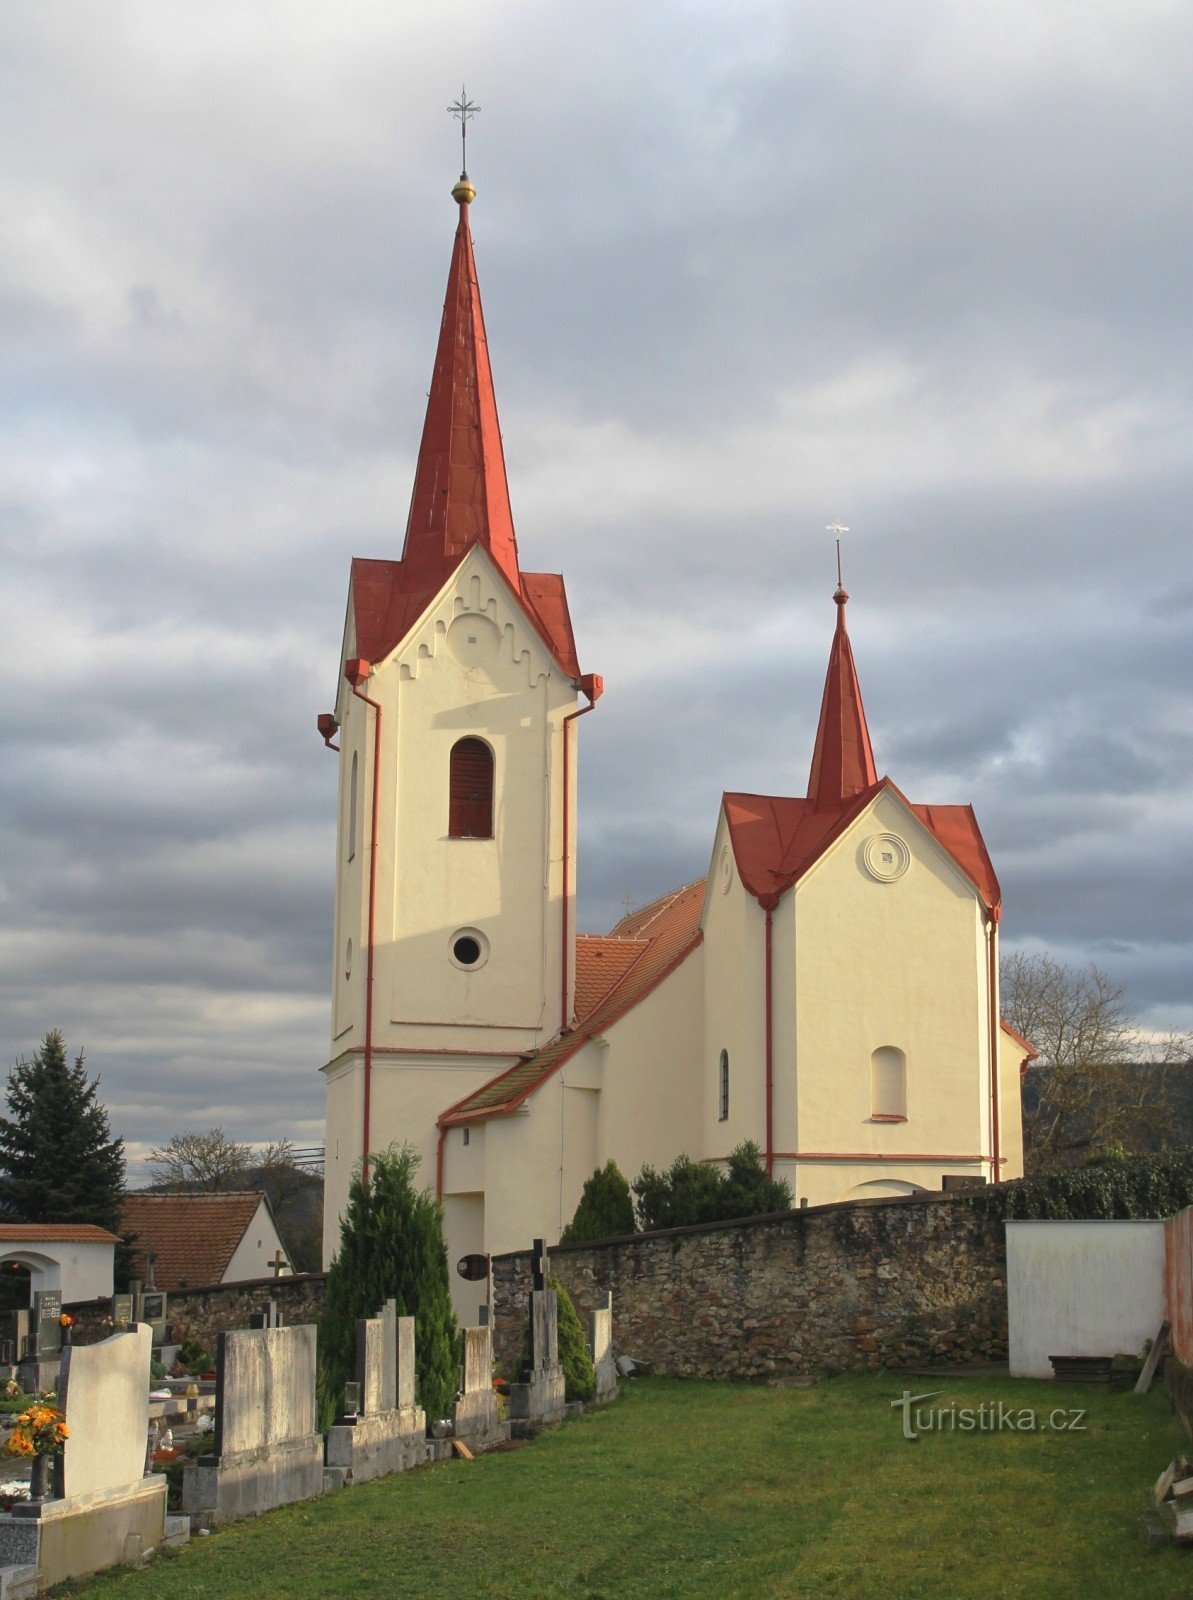 Újezd ​​near Tišnov - church of St. Lily